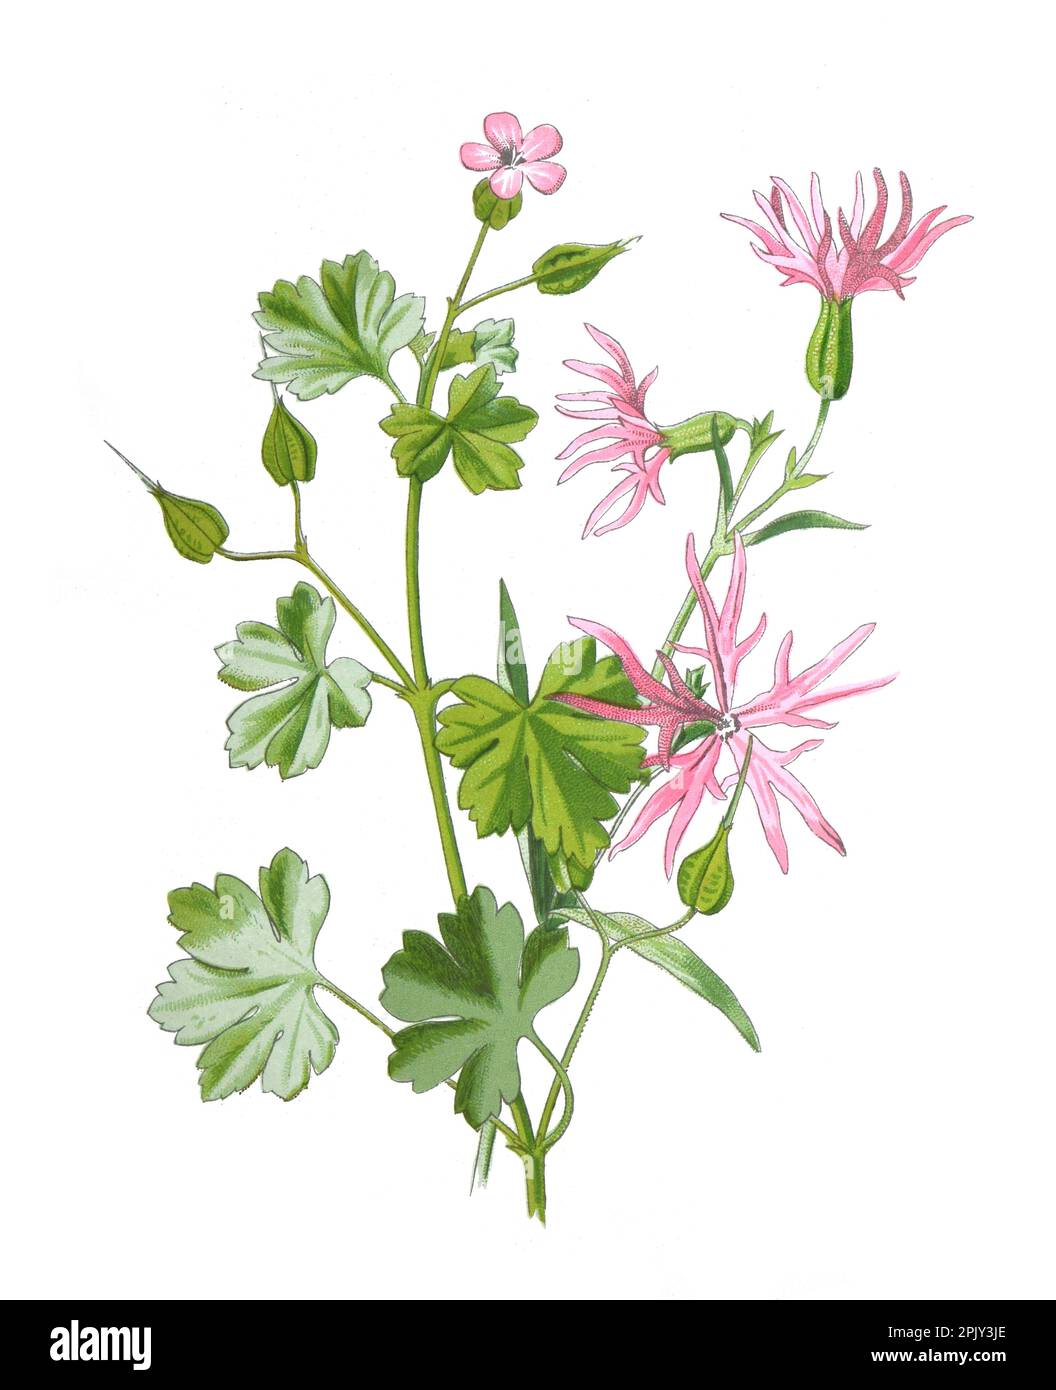 Glänzende Kräne, Blume oder Geranium lucidum und Ragged Robin. Oder Clarkia nette Insektenpflanzen handgezeichnete Feldblumen Illustration.Vintage Blume. Stockfoto